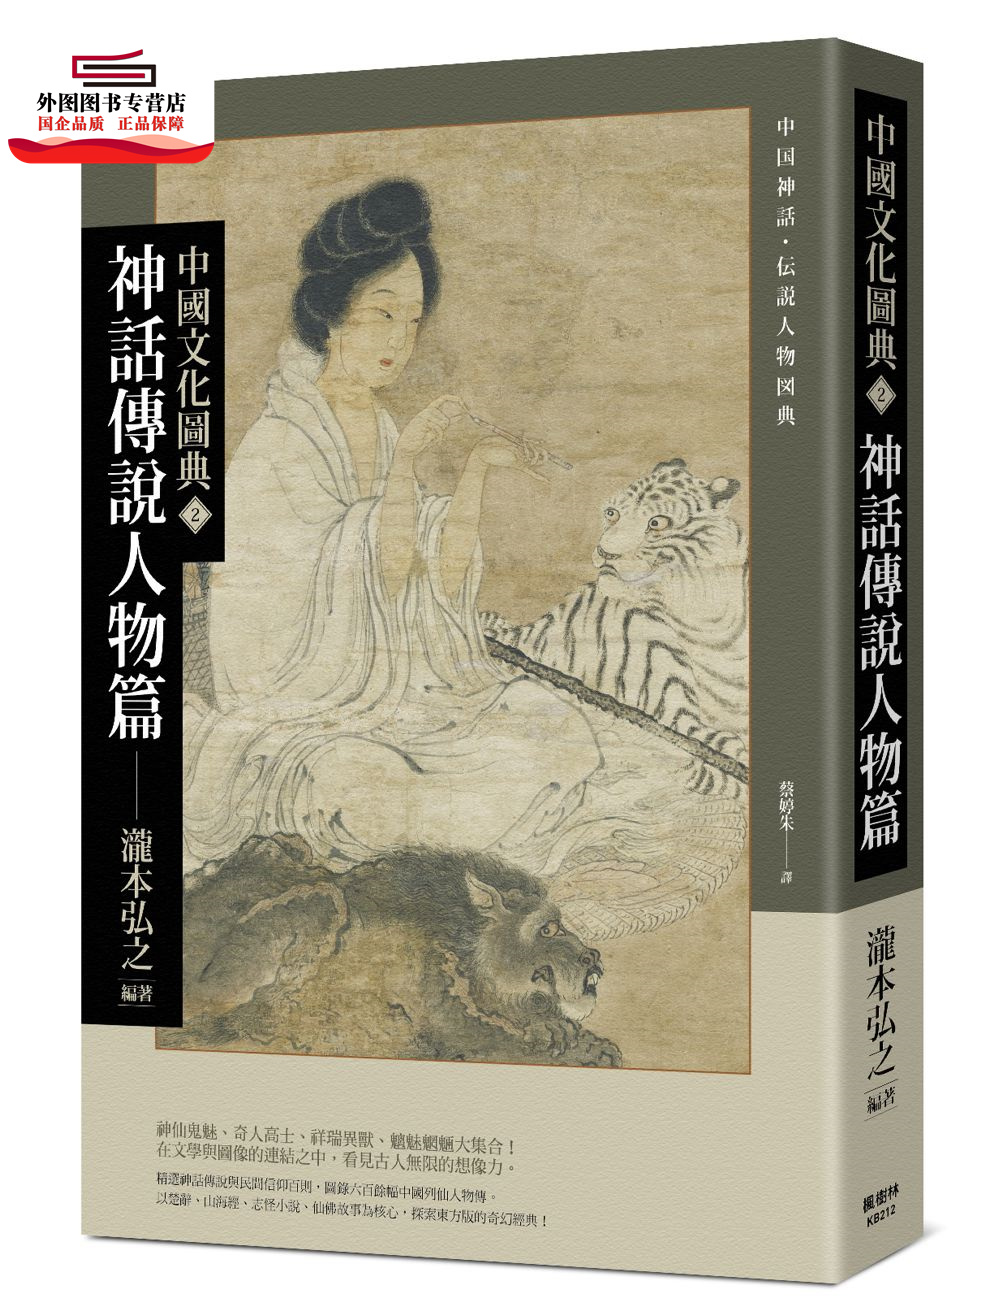 预售【外图台版】中国文化图典2 神话传说人物篇 / 泷本弘之 枫树林